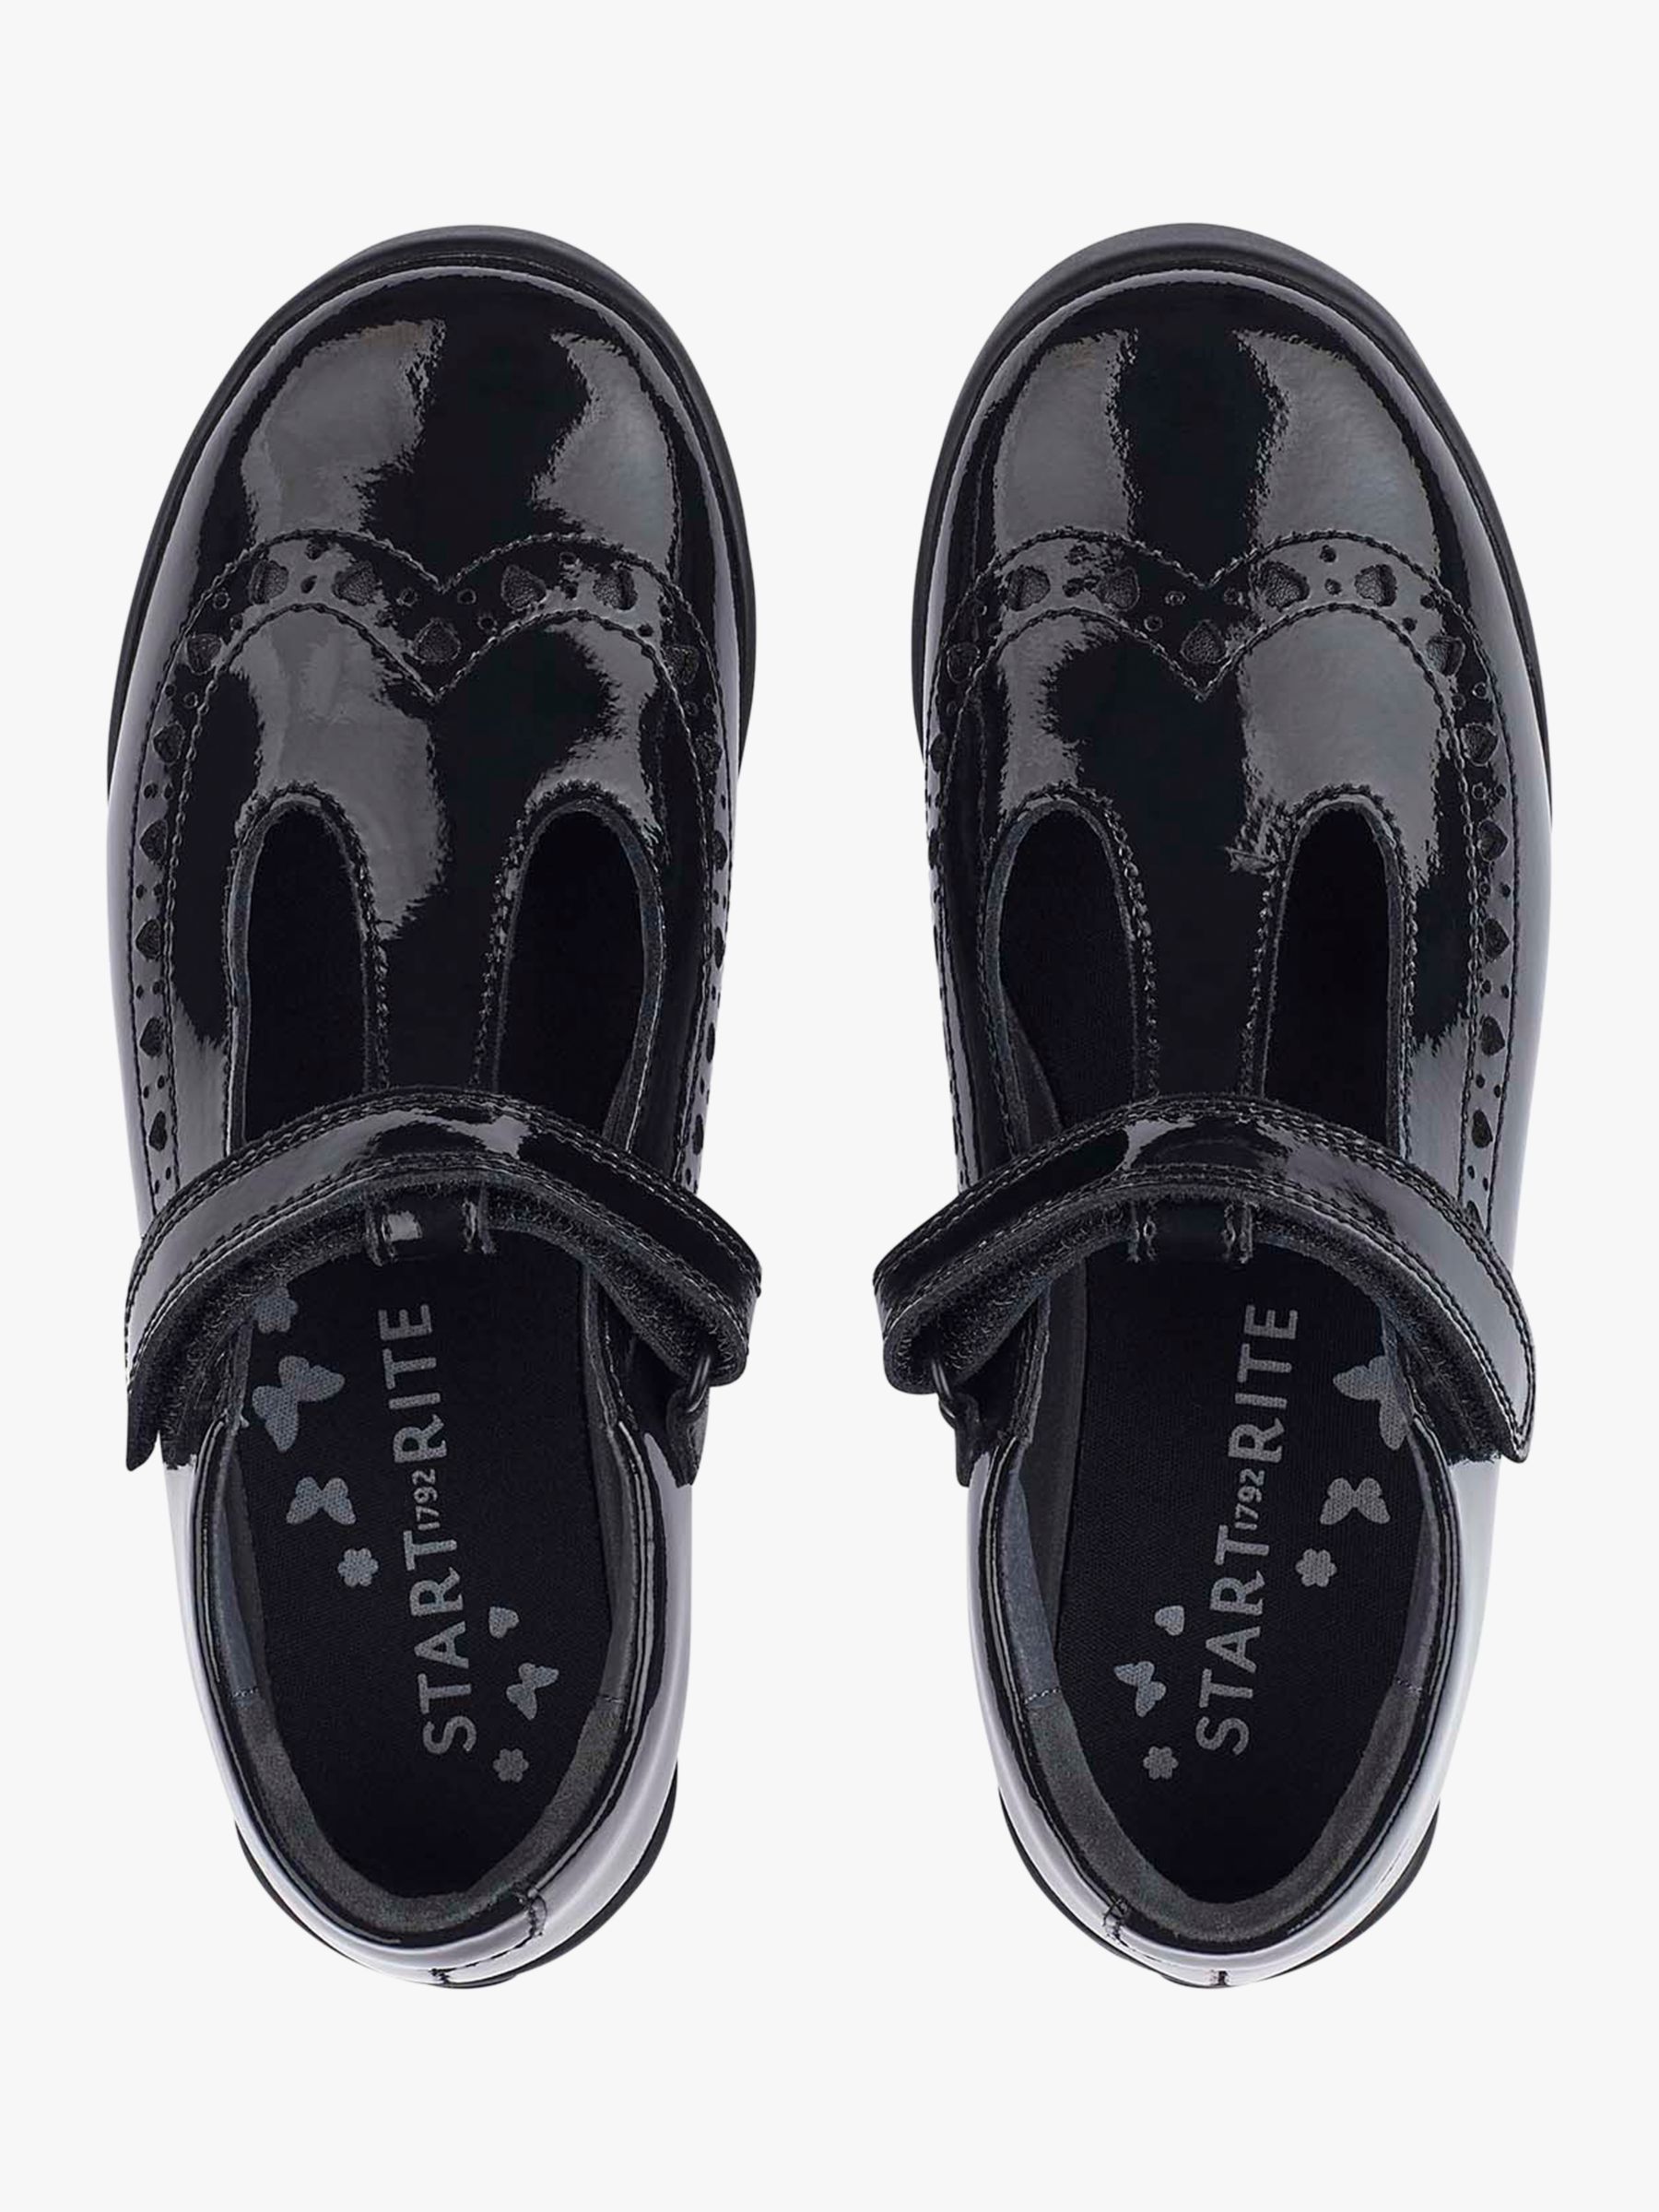 Start-Rite Kids' Leapfrog Riptape Glossy Leather Shoes, Black, 7.5E Jnr